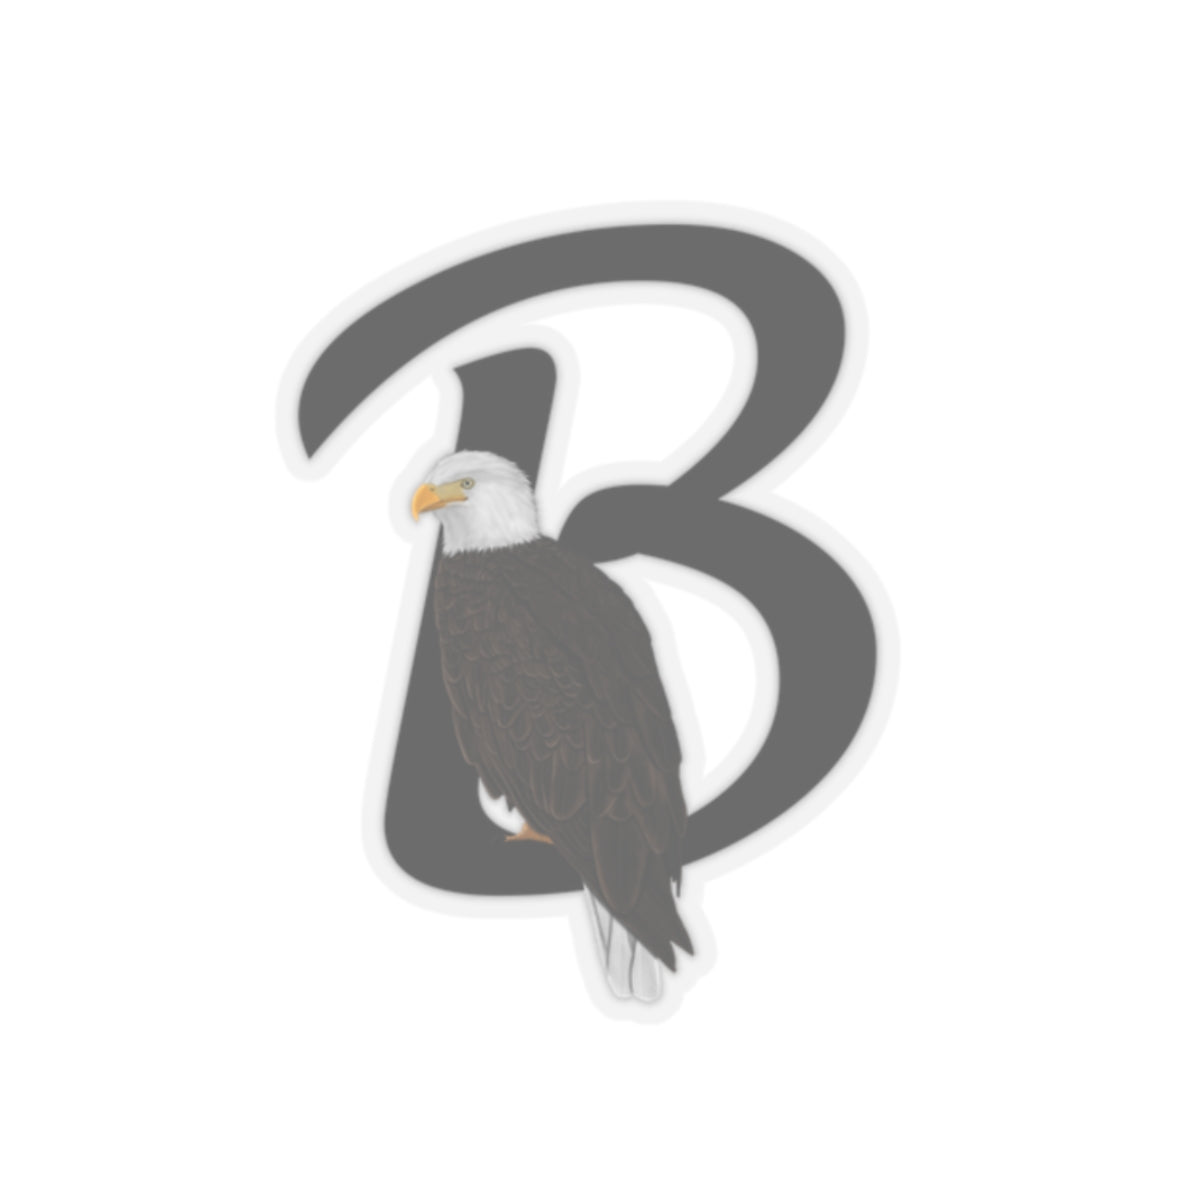 Bald Eagle Letter B Bird Kiss-Cut Sticker